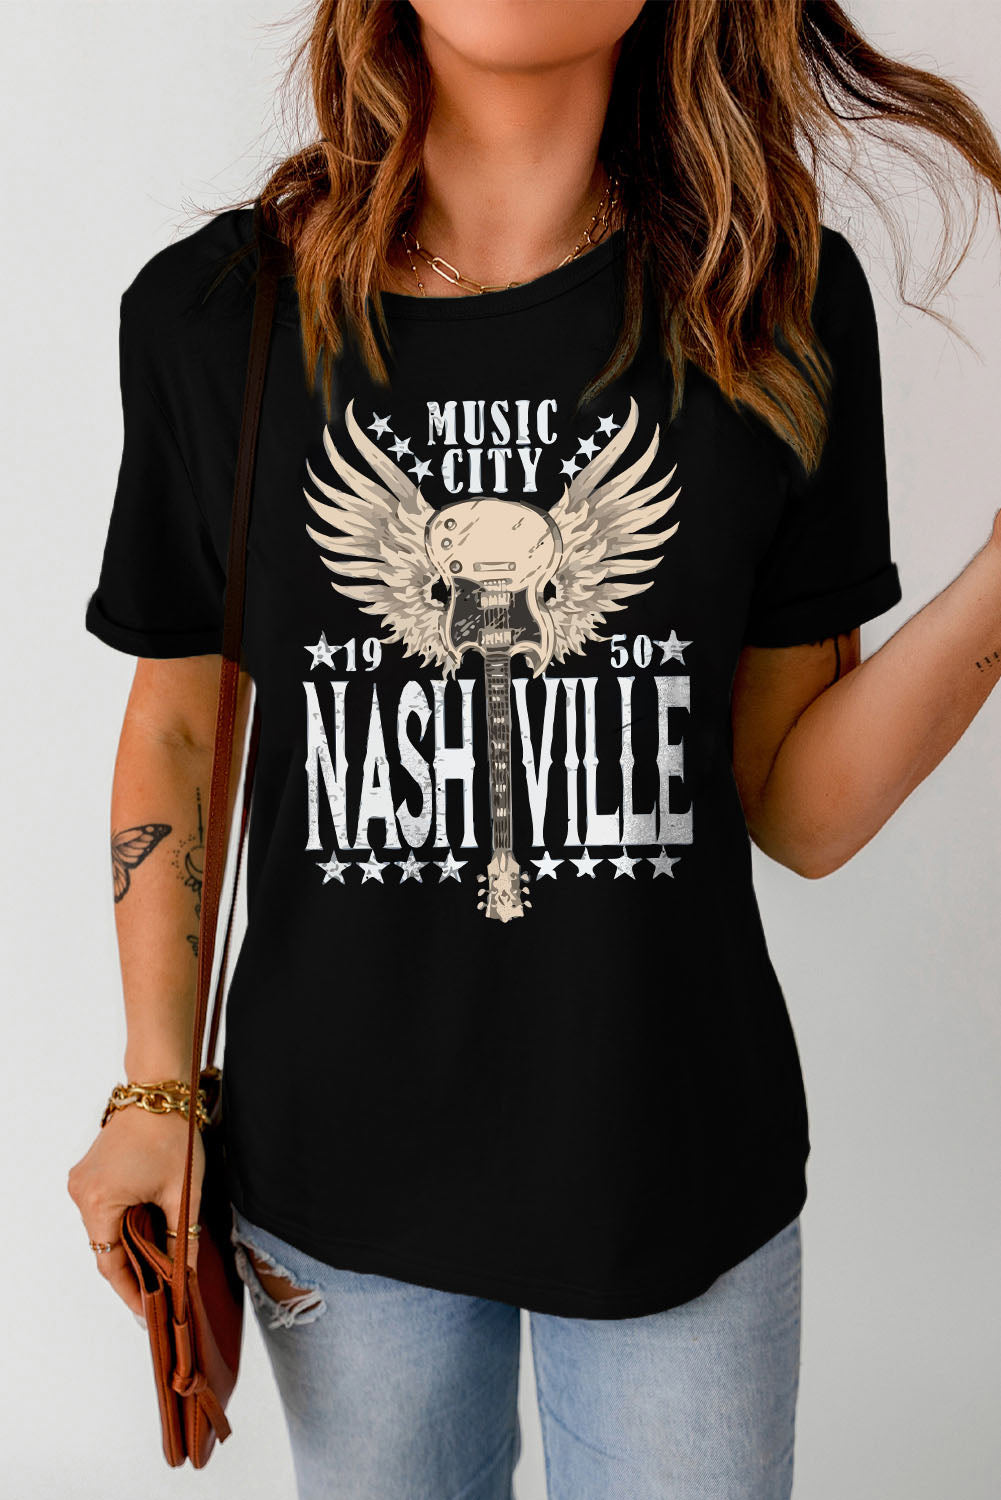 Music City Nashville T-Shirt - Shop All Around Divas